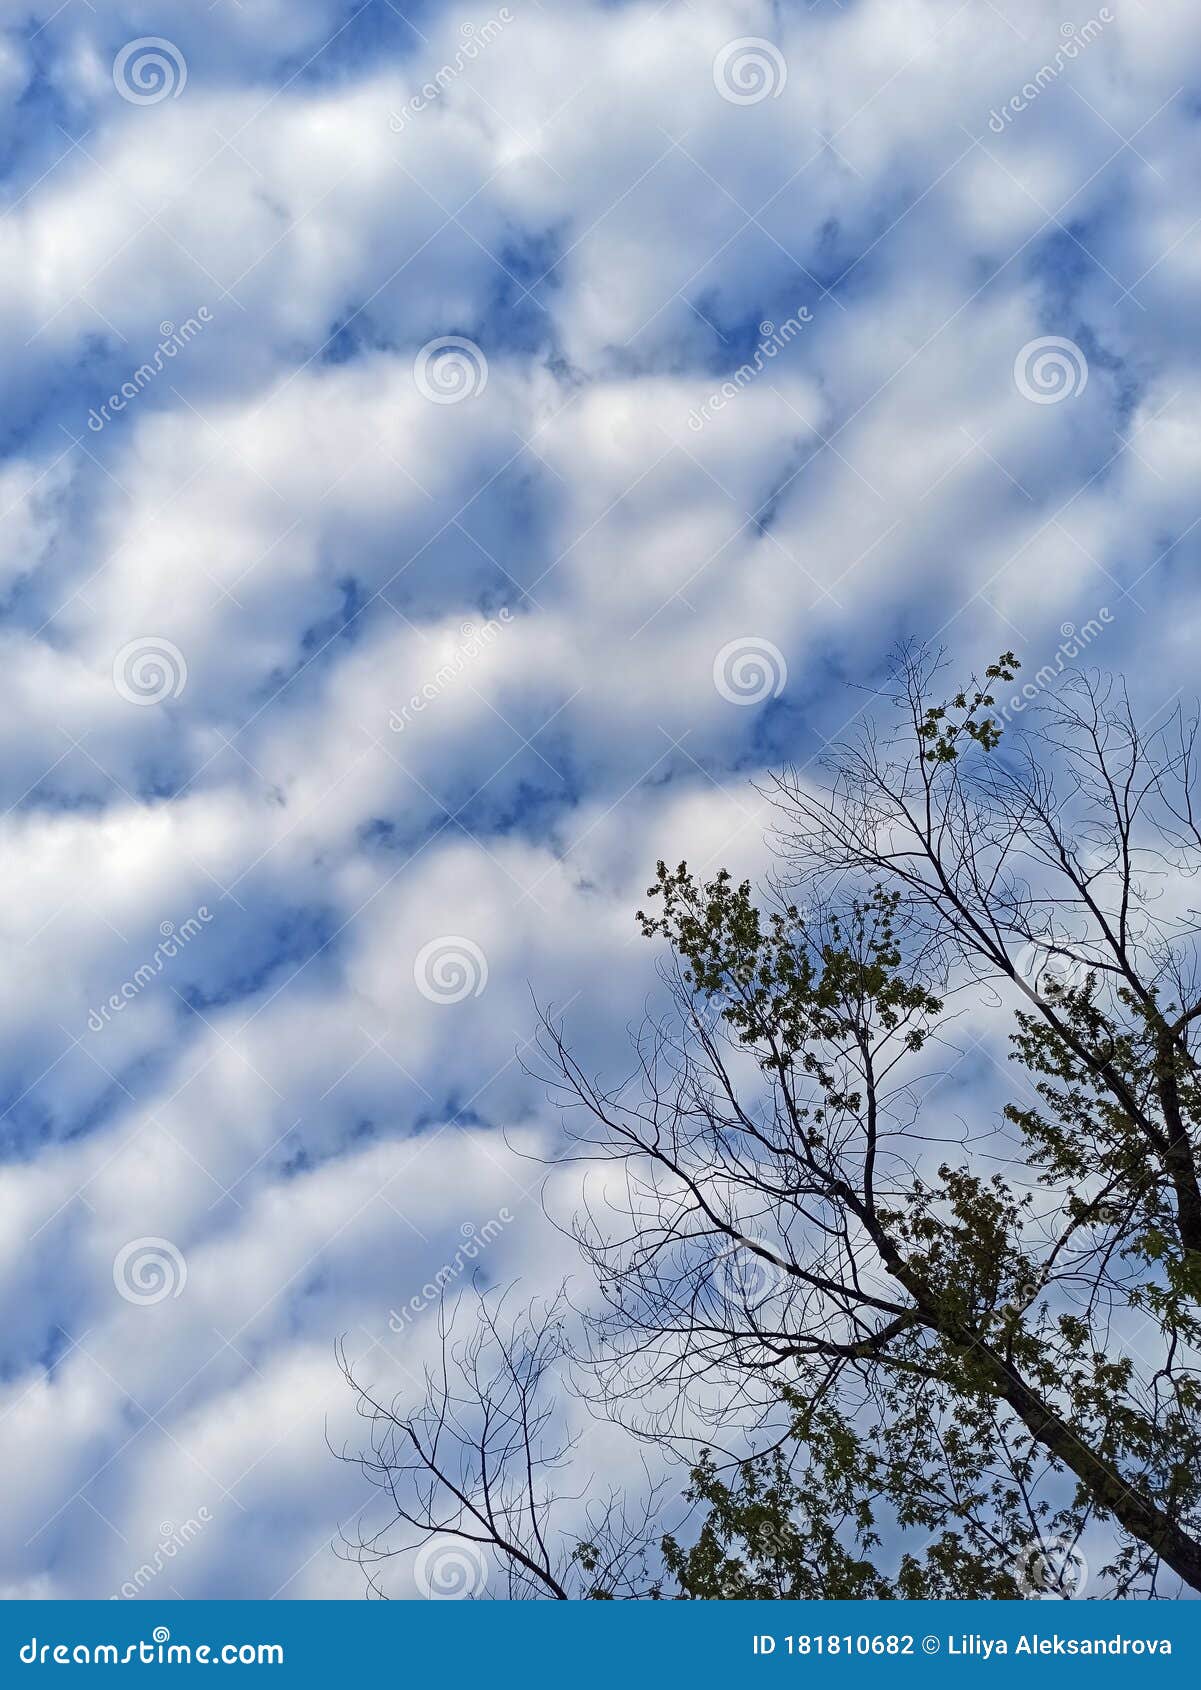 令人惊异的云蓝天 卷云和树影自然壁纸库照片库存照片 图片包括有自然壁纸库照片 令人惊异的云蓝天 卷云和树影